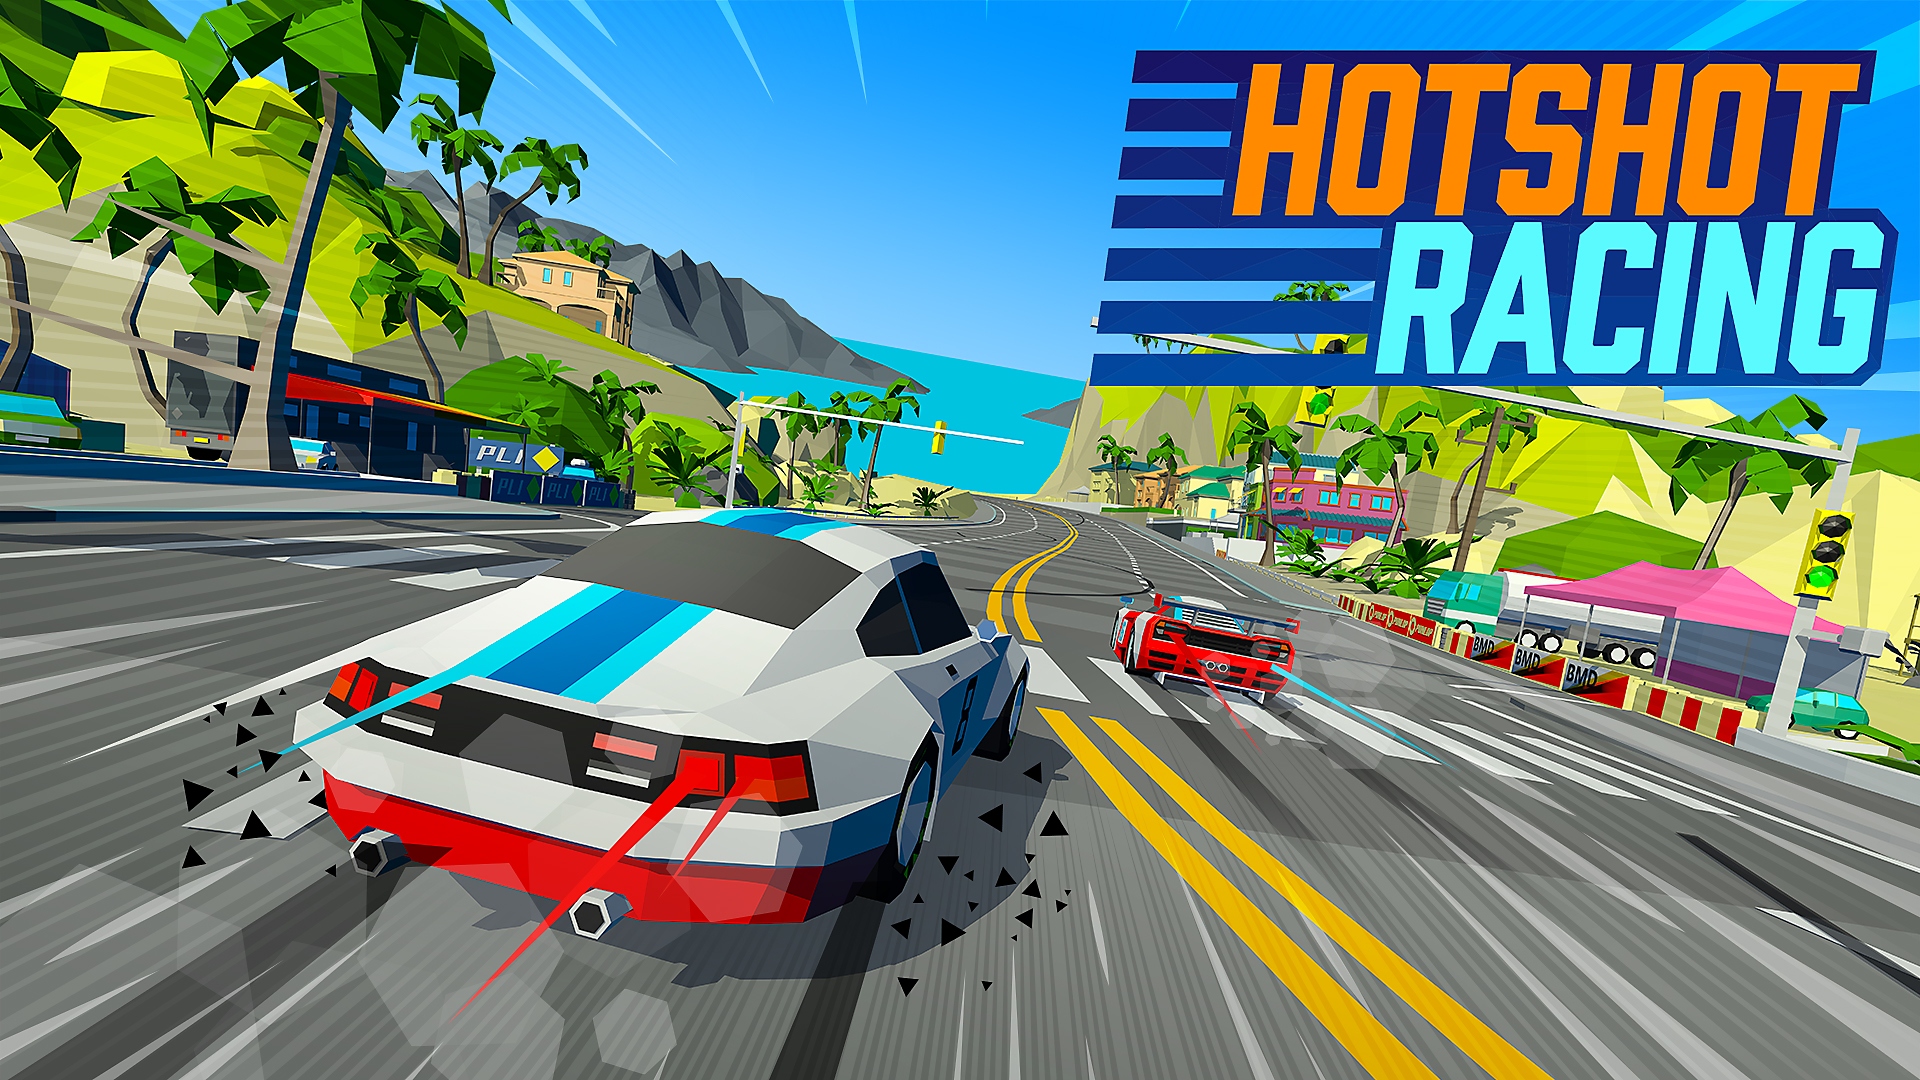 Hotshot Racing - Release Date Trailer | PS4